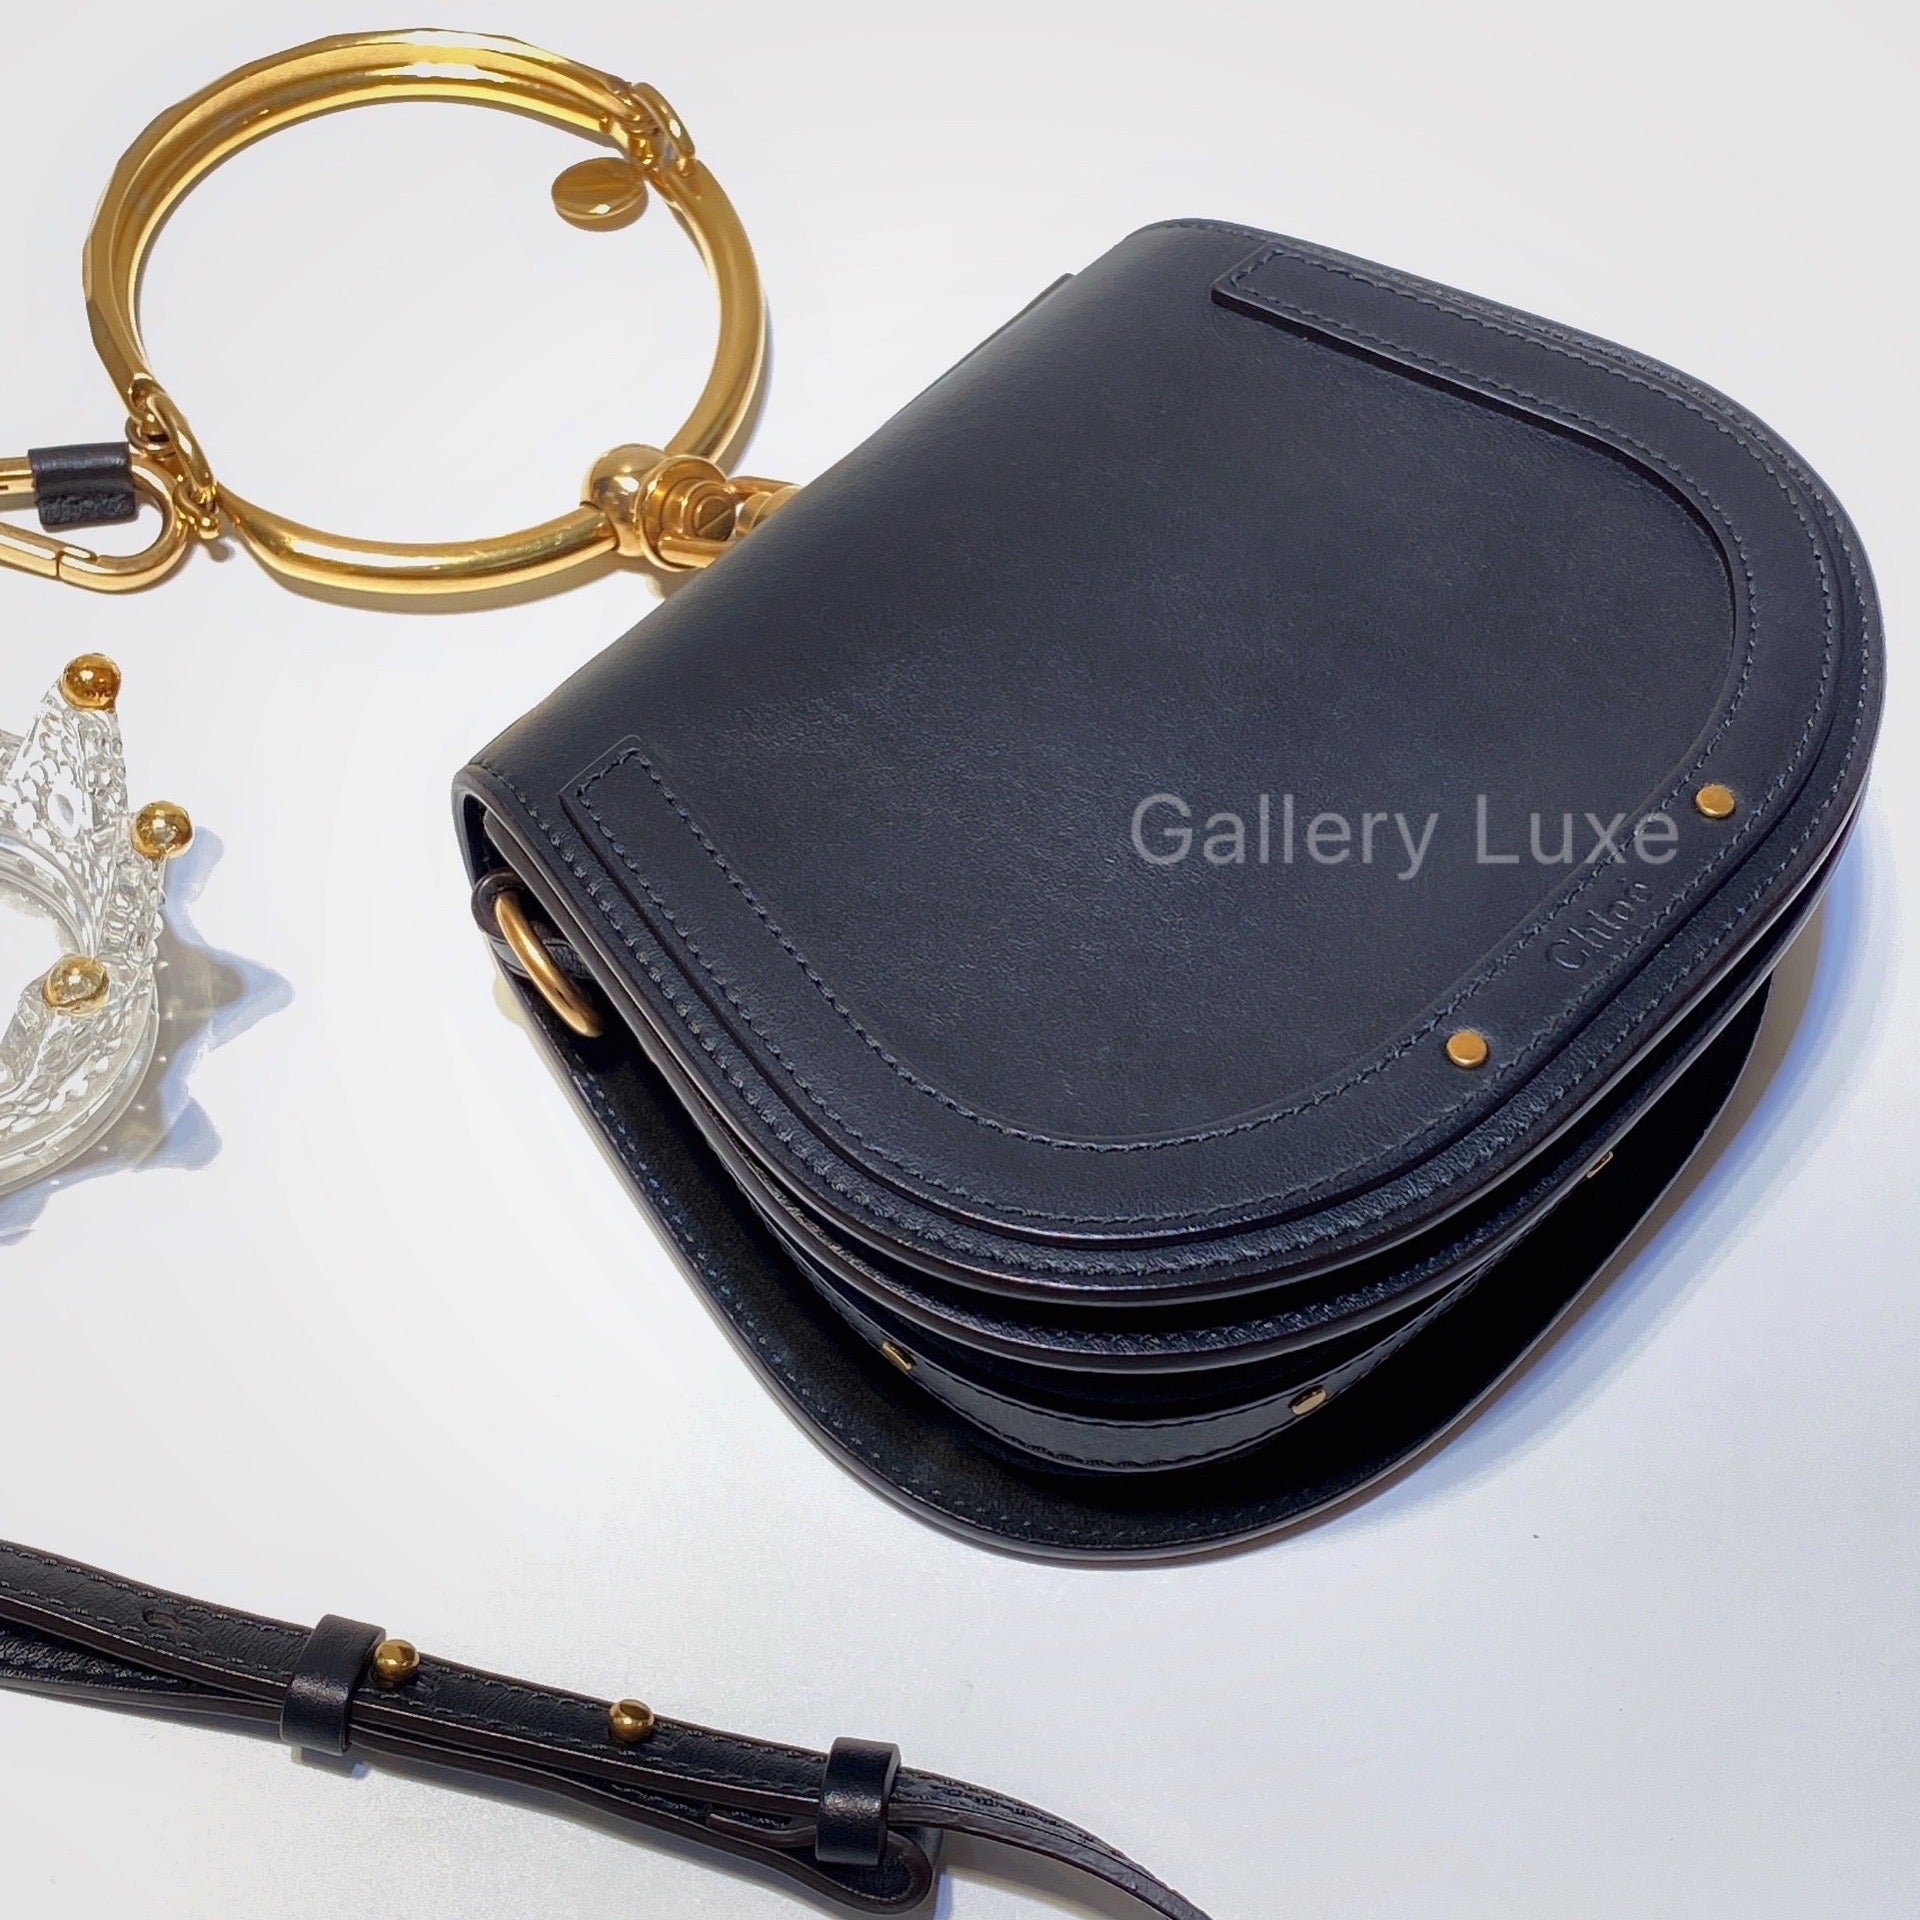 Chloe Nile Medium Bracelet Bag – Amour Luxury